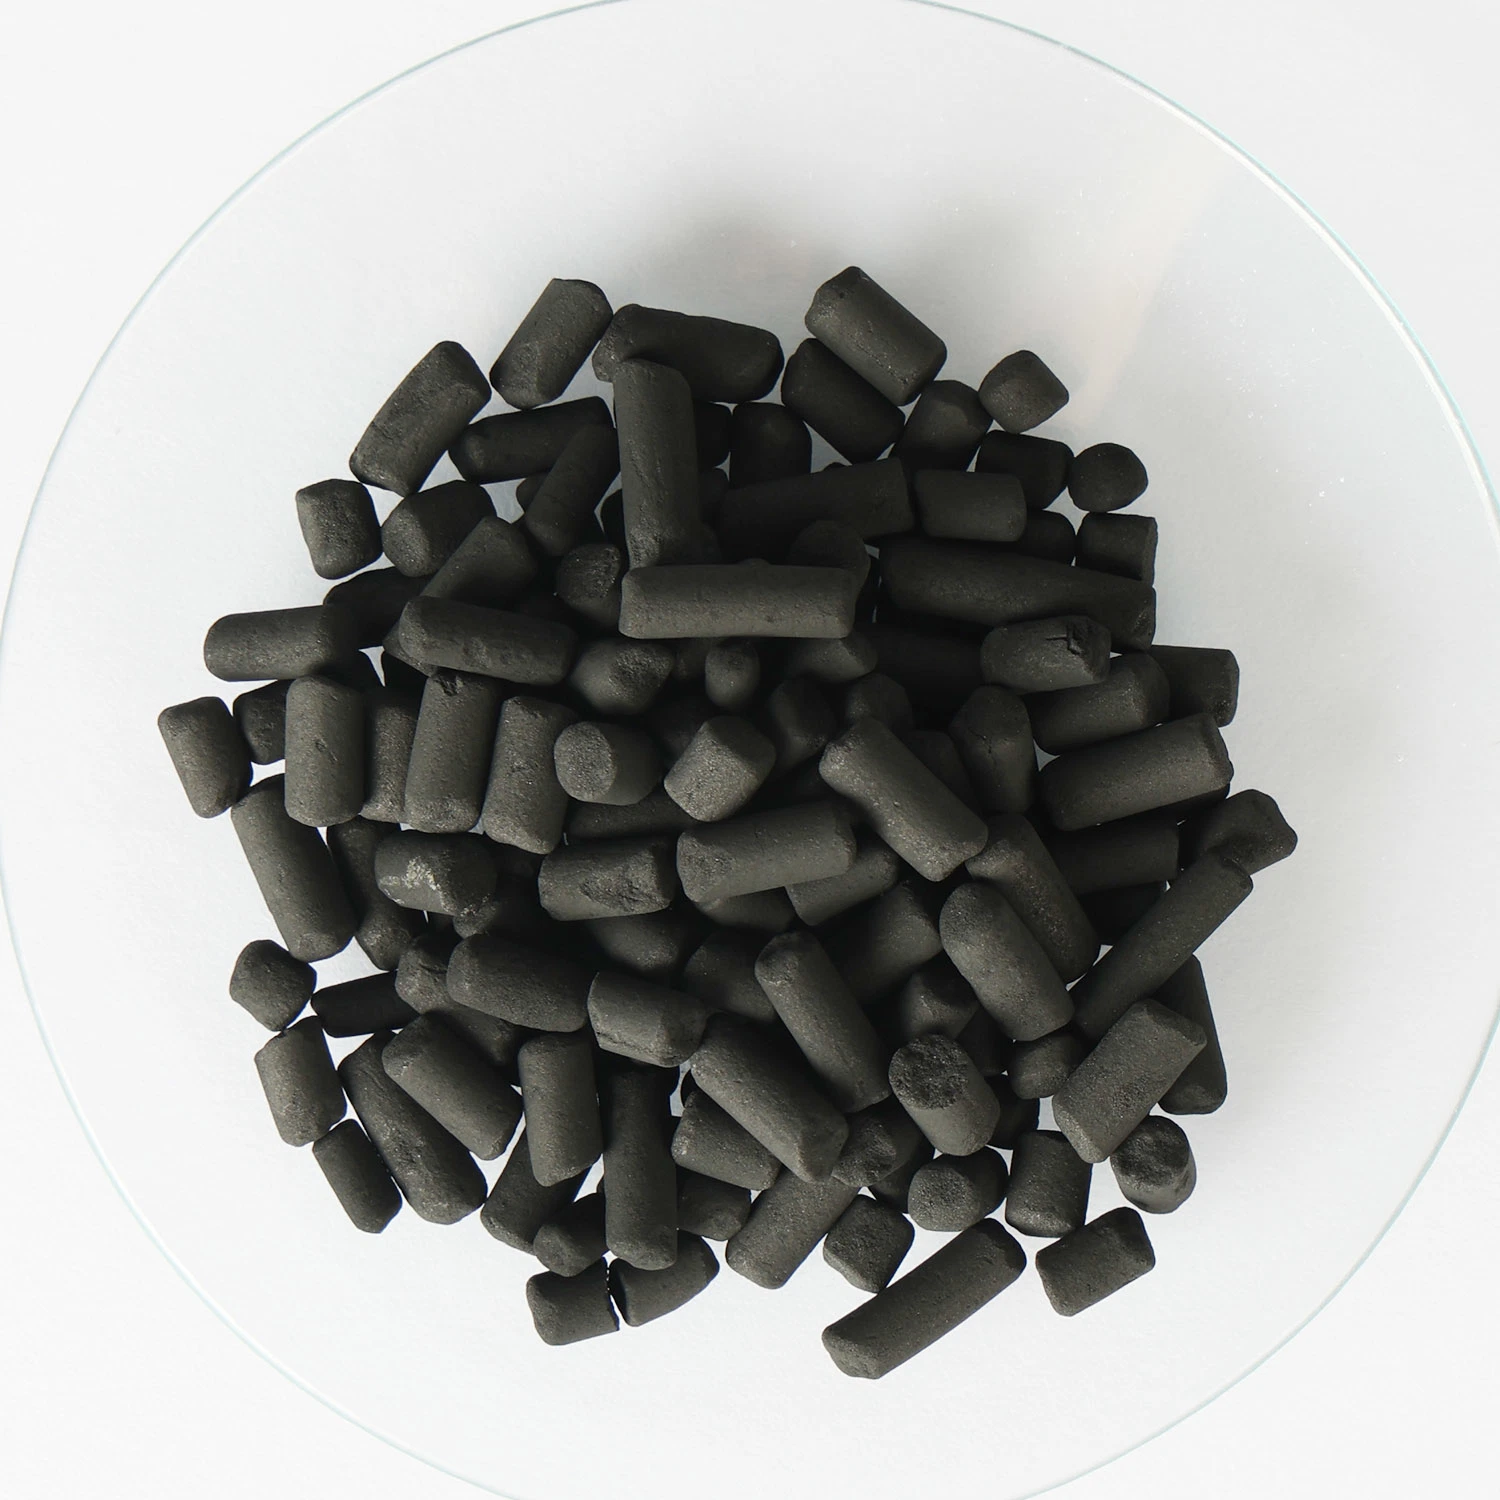 1000 г на мг значение йода в виде столбцов угля черного цвета с активированным углем применяется в области газа